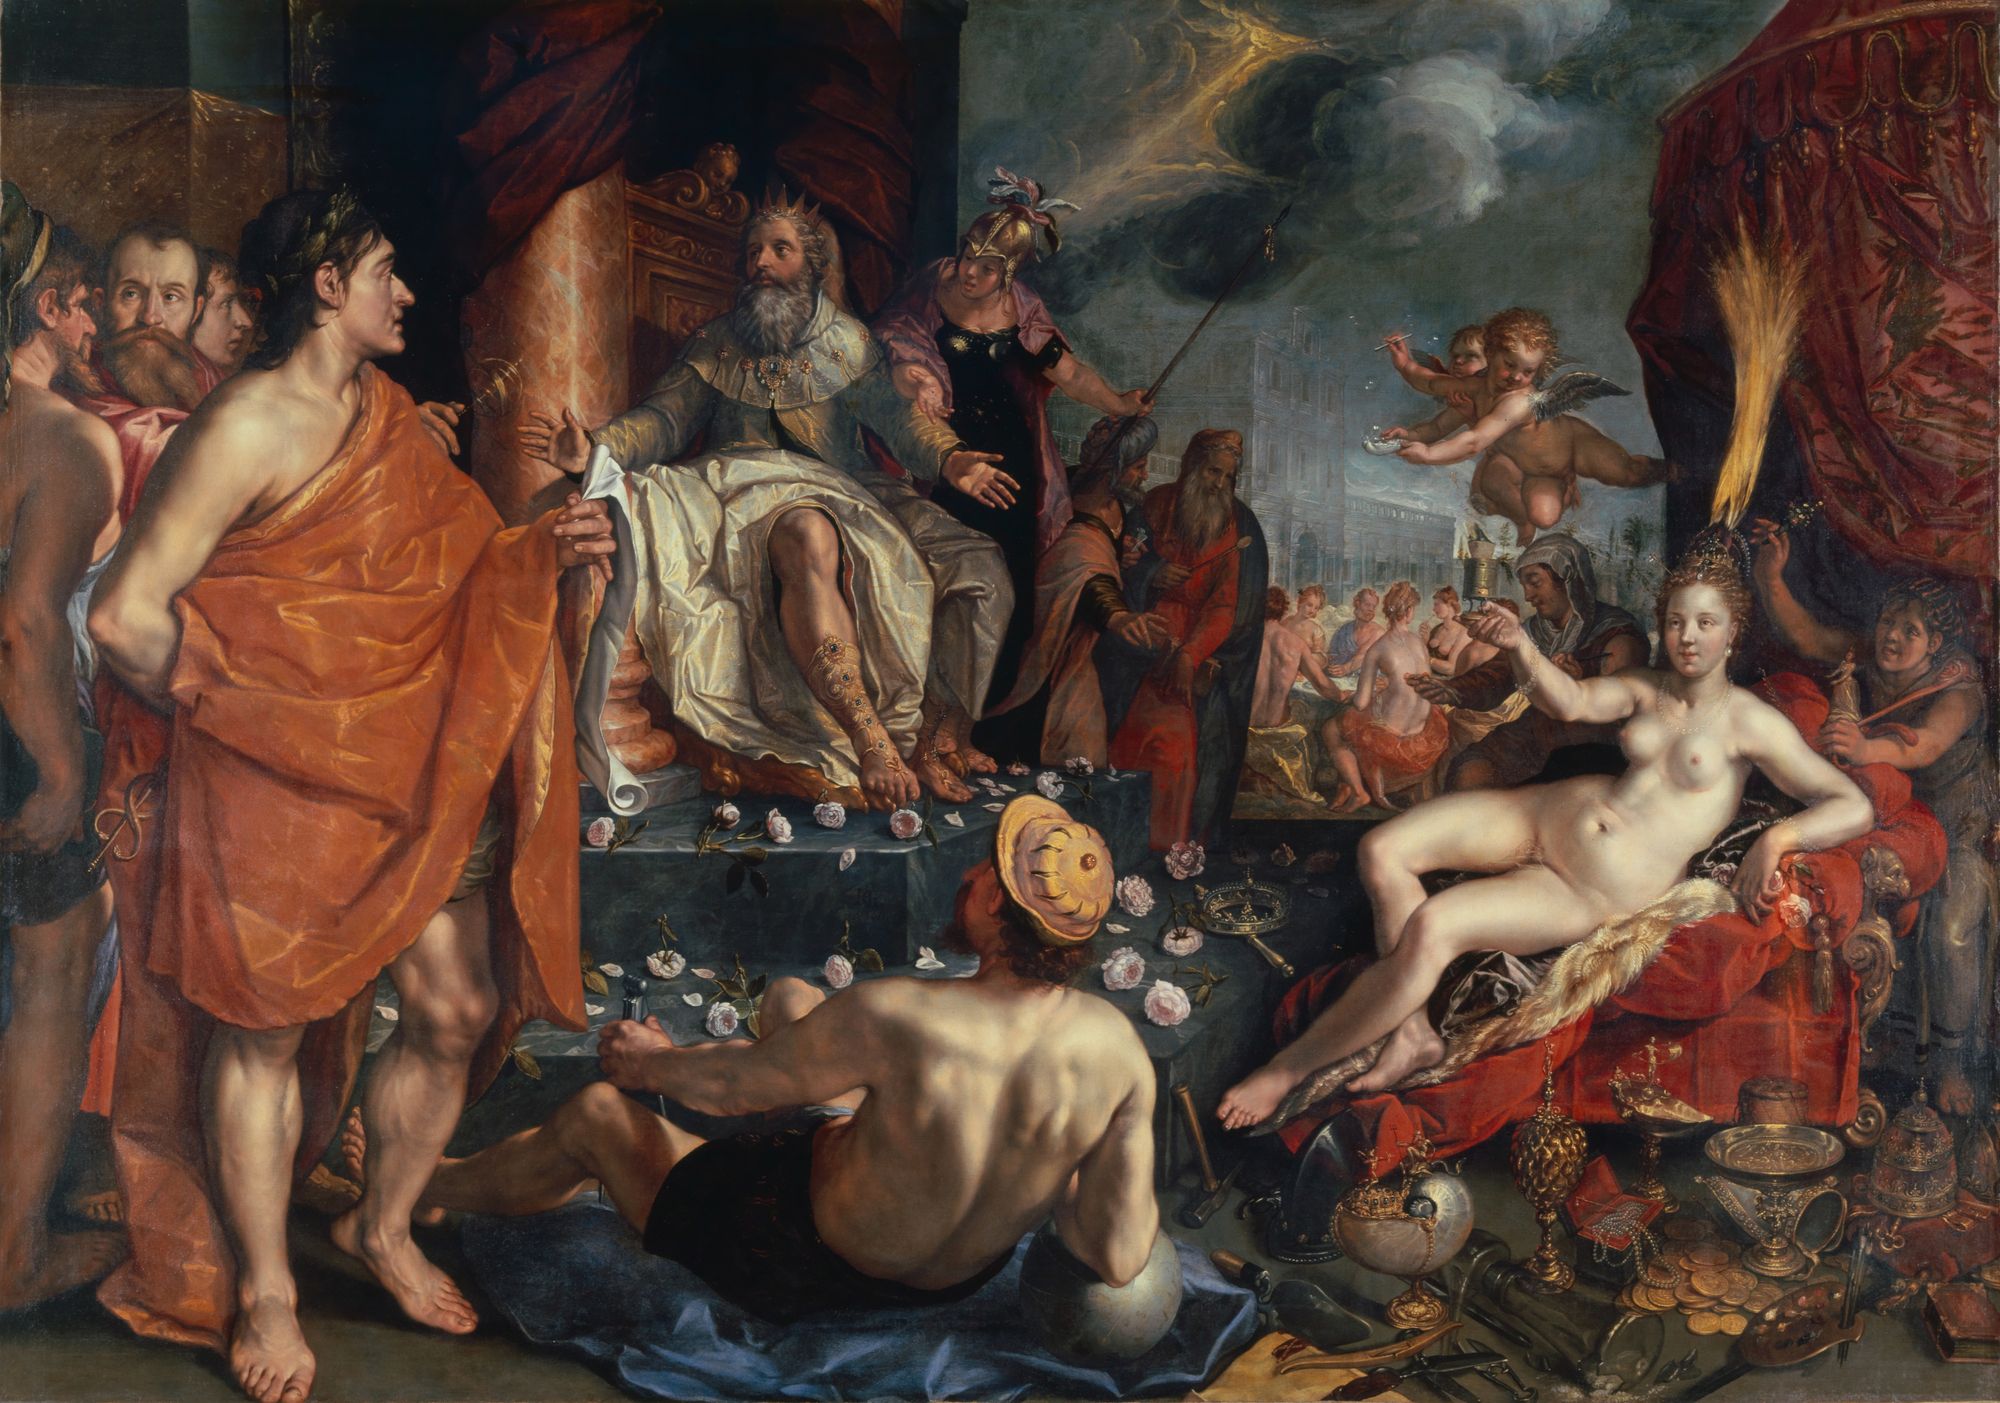 Hermes presenta a Pandora ante Epimeteo, quien prendado de la belleza de la mujer se caso con ella, a pesar de los anuncios realizados por Prometeo. Pintura de Hendrick Goltzius.